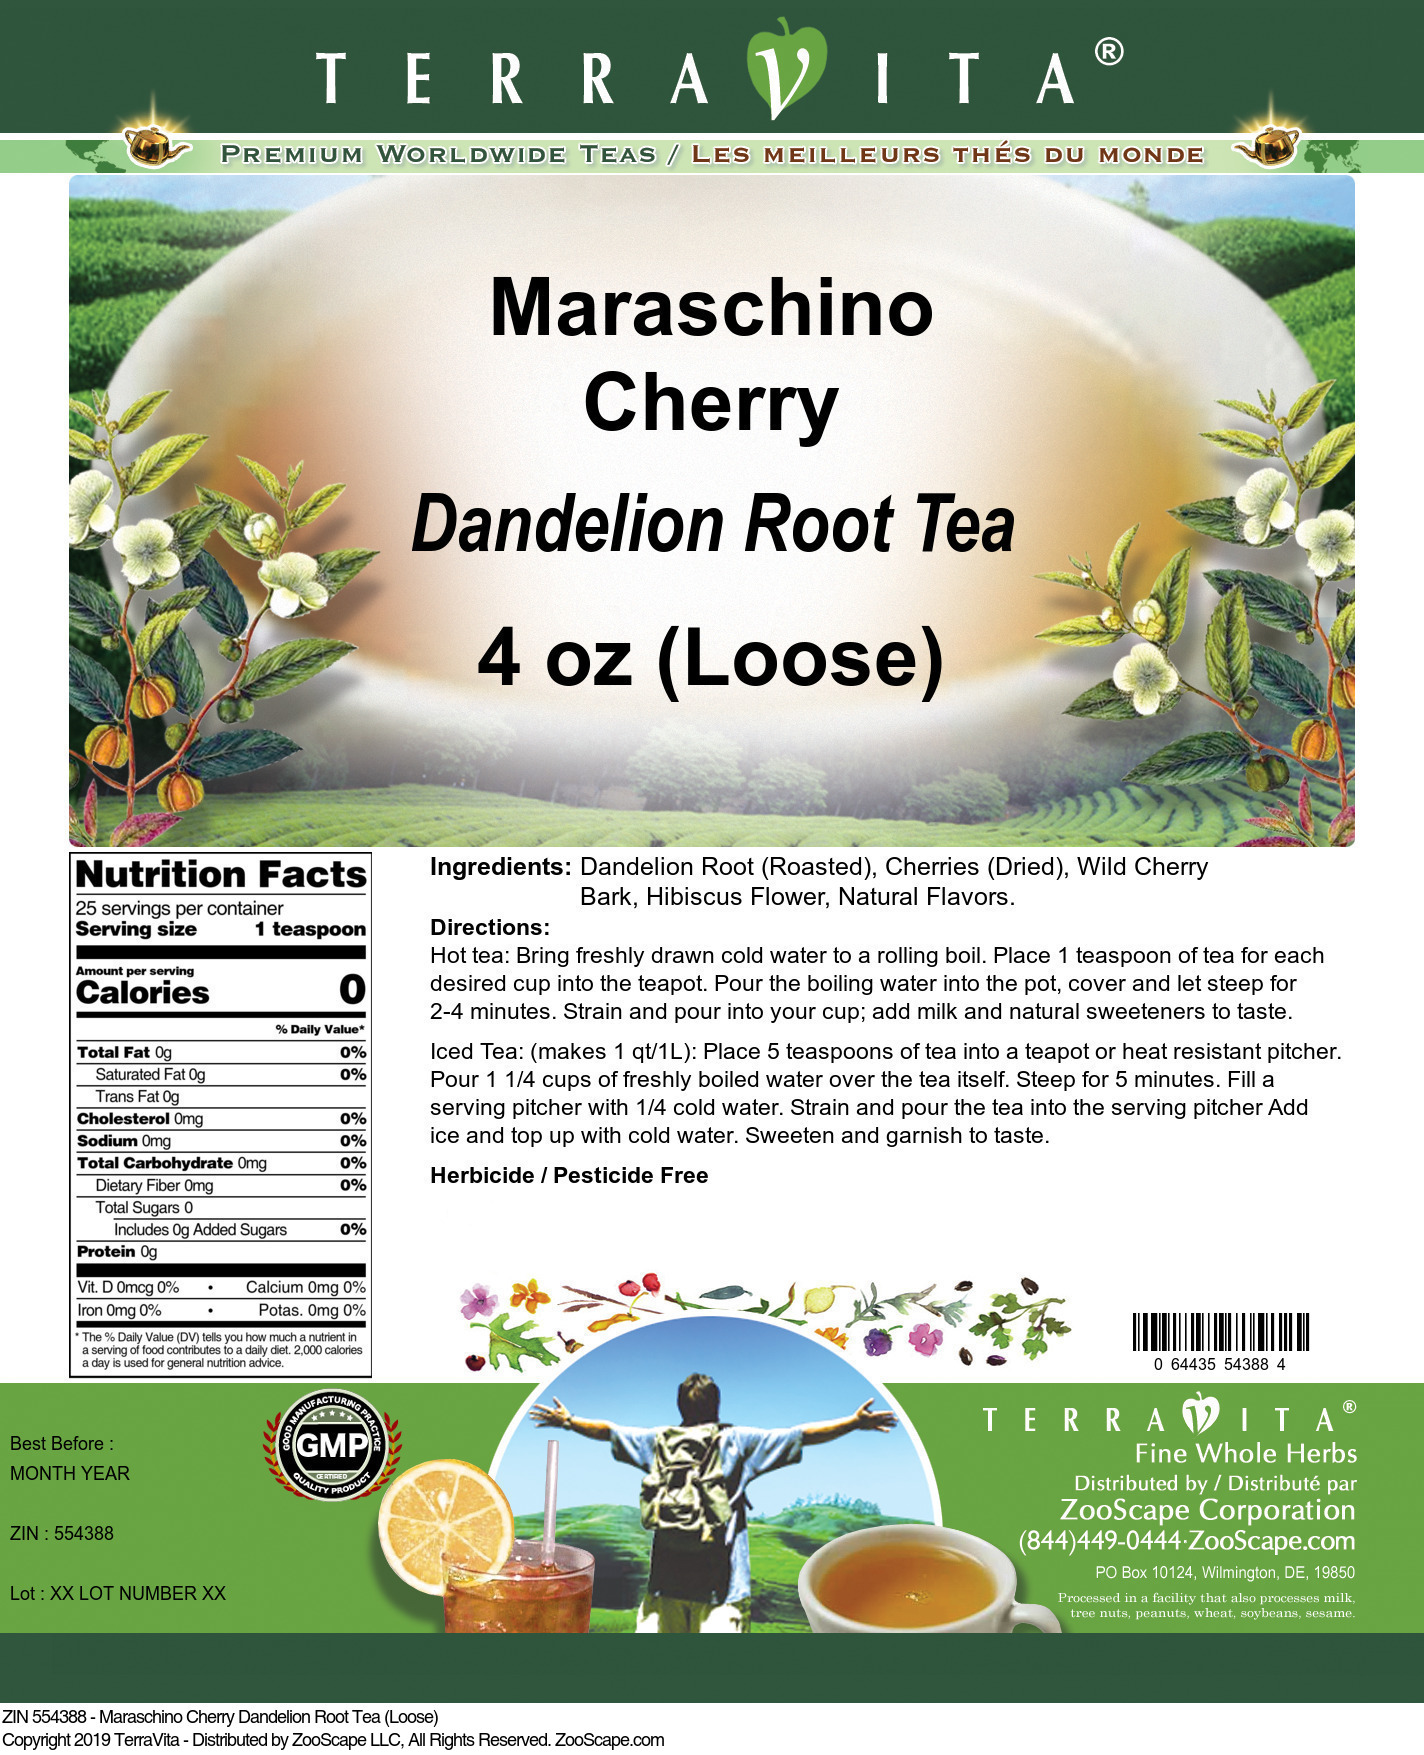 Maraschino Cherry Dandelion Root Tea (Loose) - Label